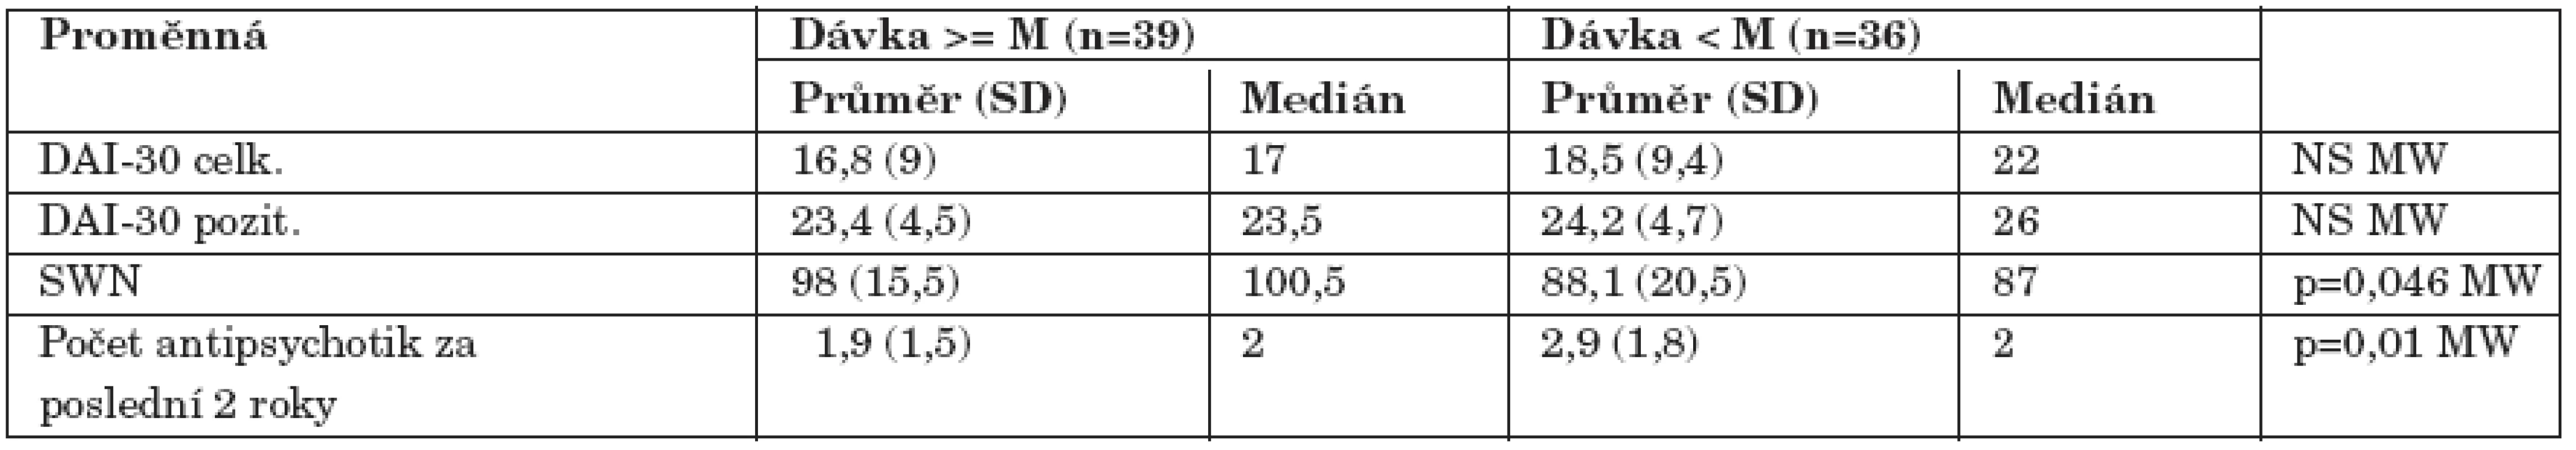 Srovnání vztahu k léčbě a subjektivní spokojenosti ve skupinách rozdělených podle mediánu (M) celkové denní dávky (250 mg chlorpromazinového ekvivalentu) antipsychotik.